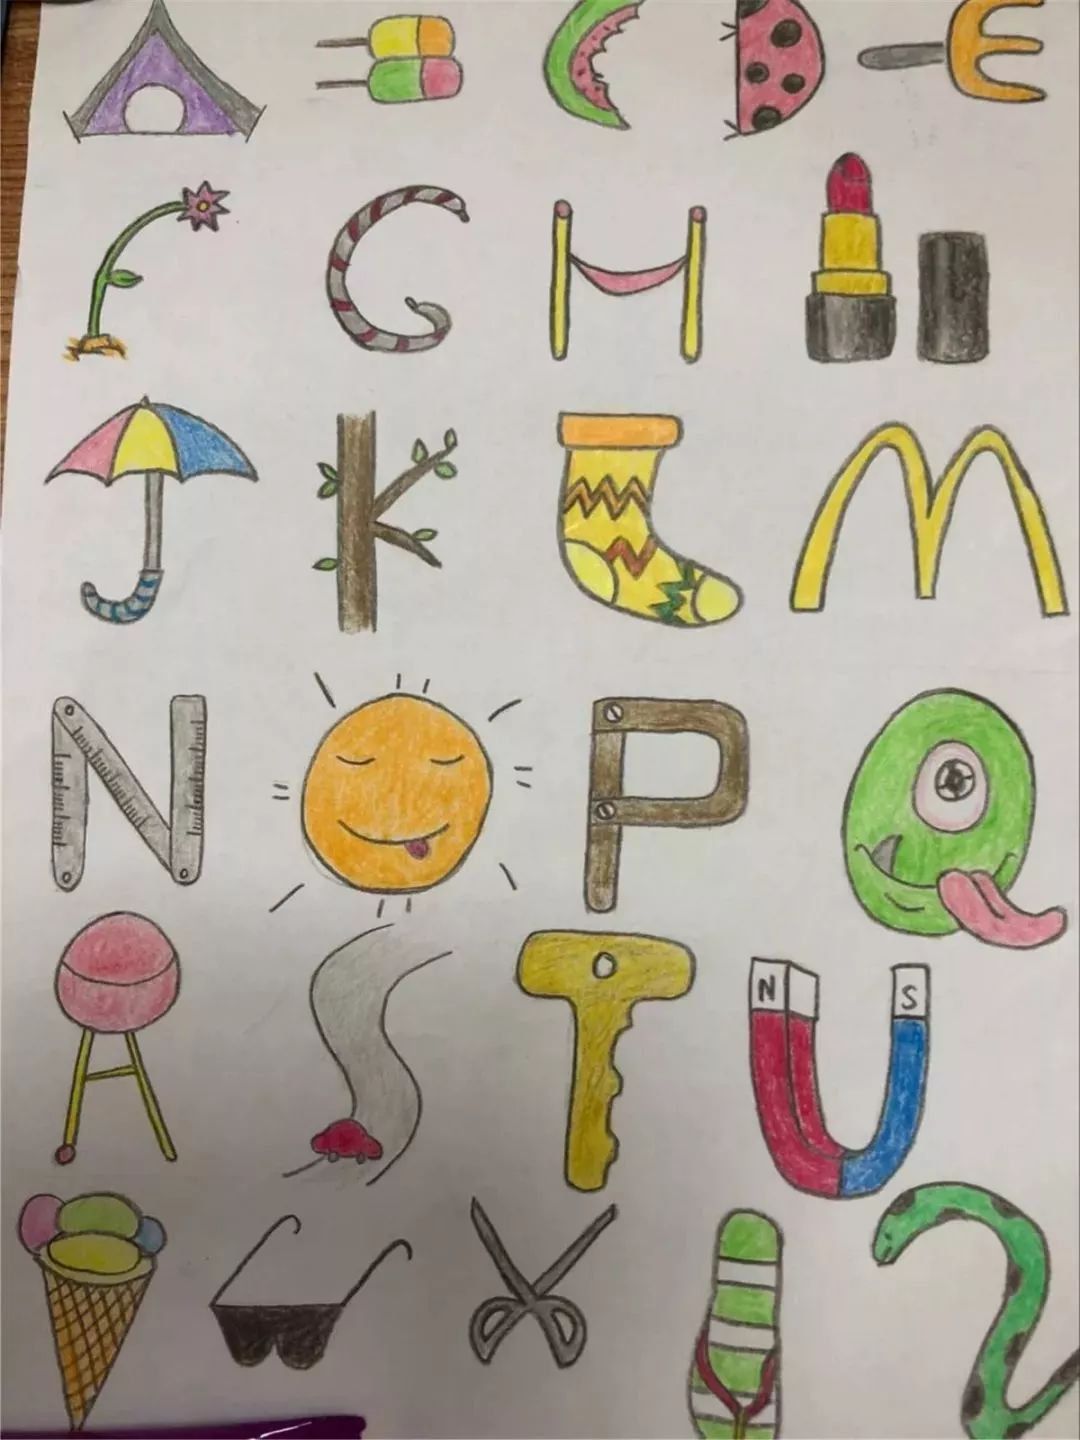 【创意致远】我的英文字母会说话——二年级英文字母创意画